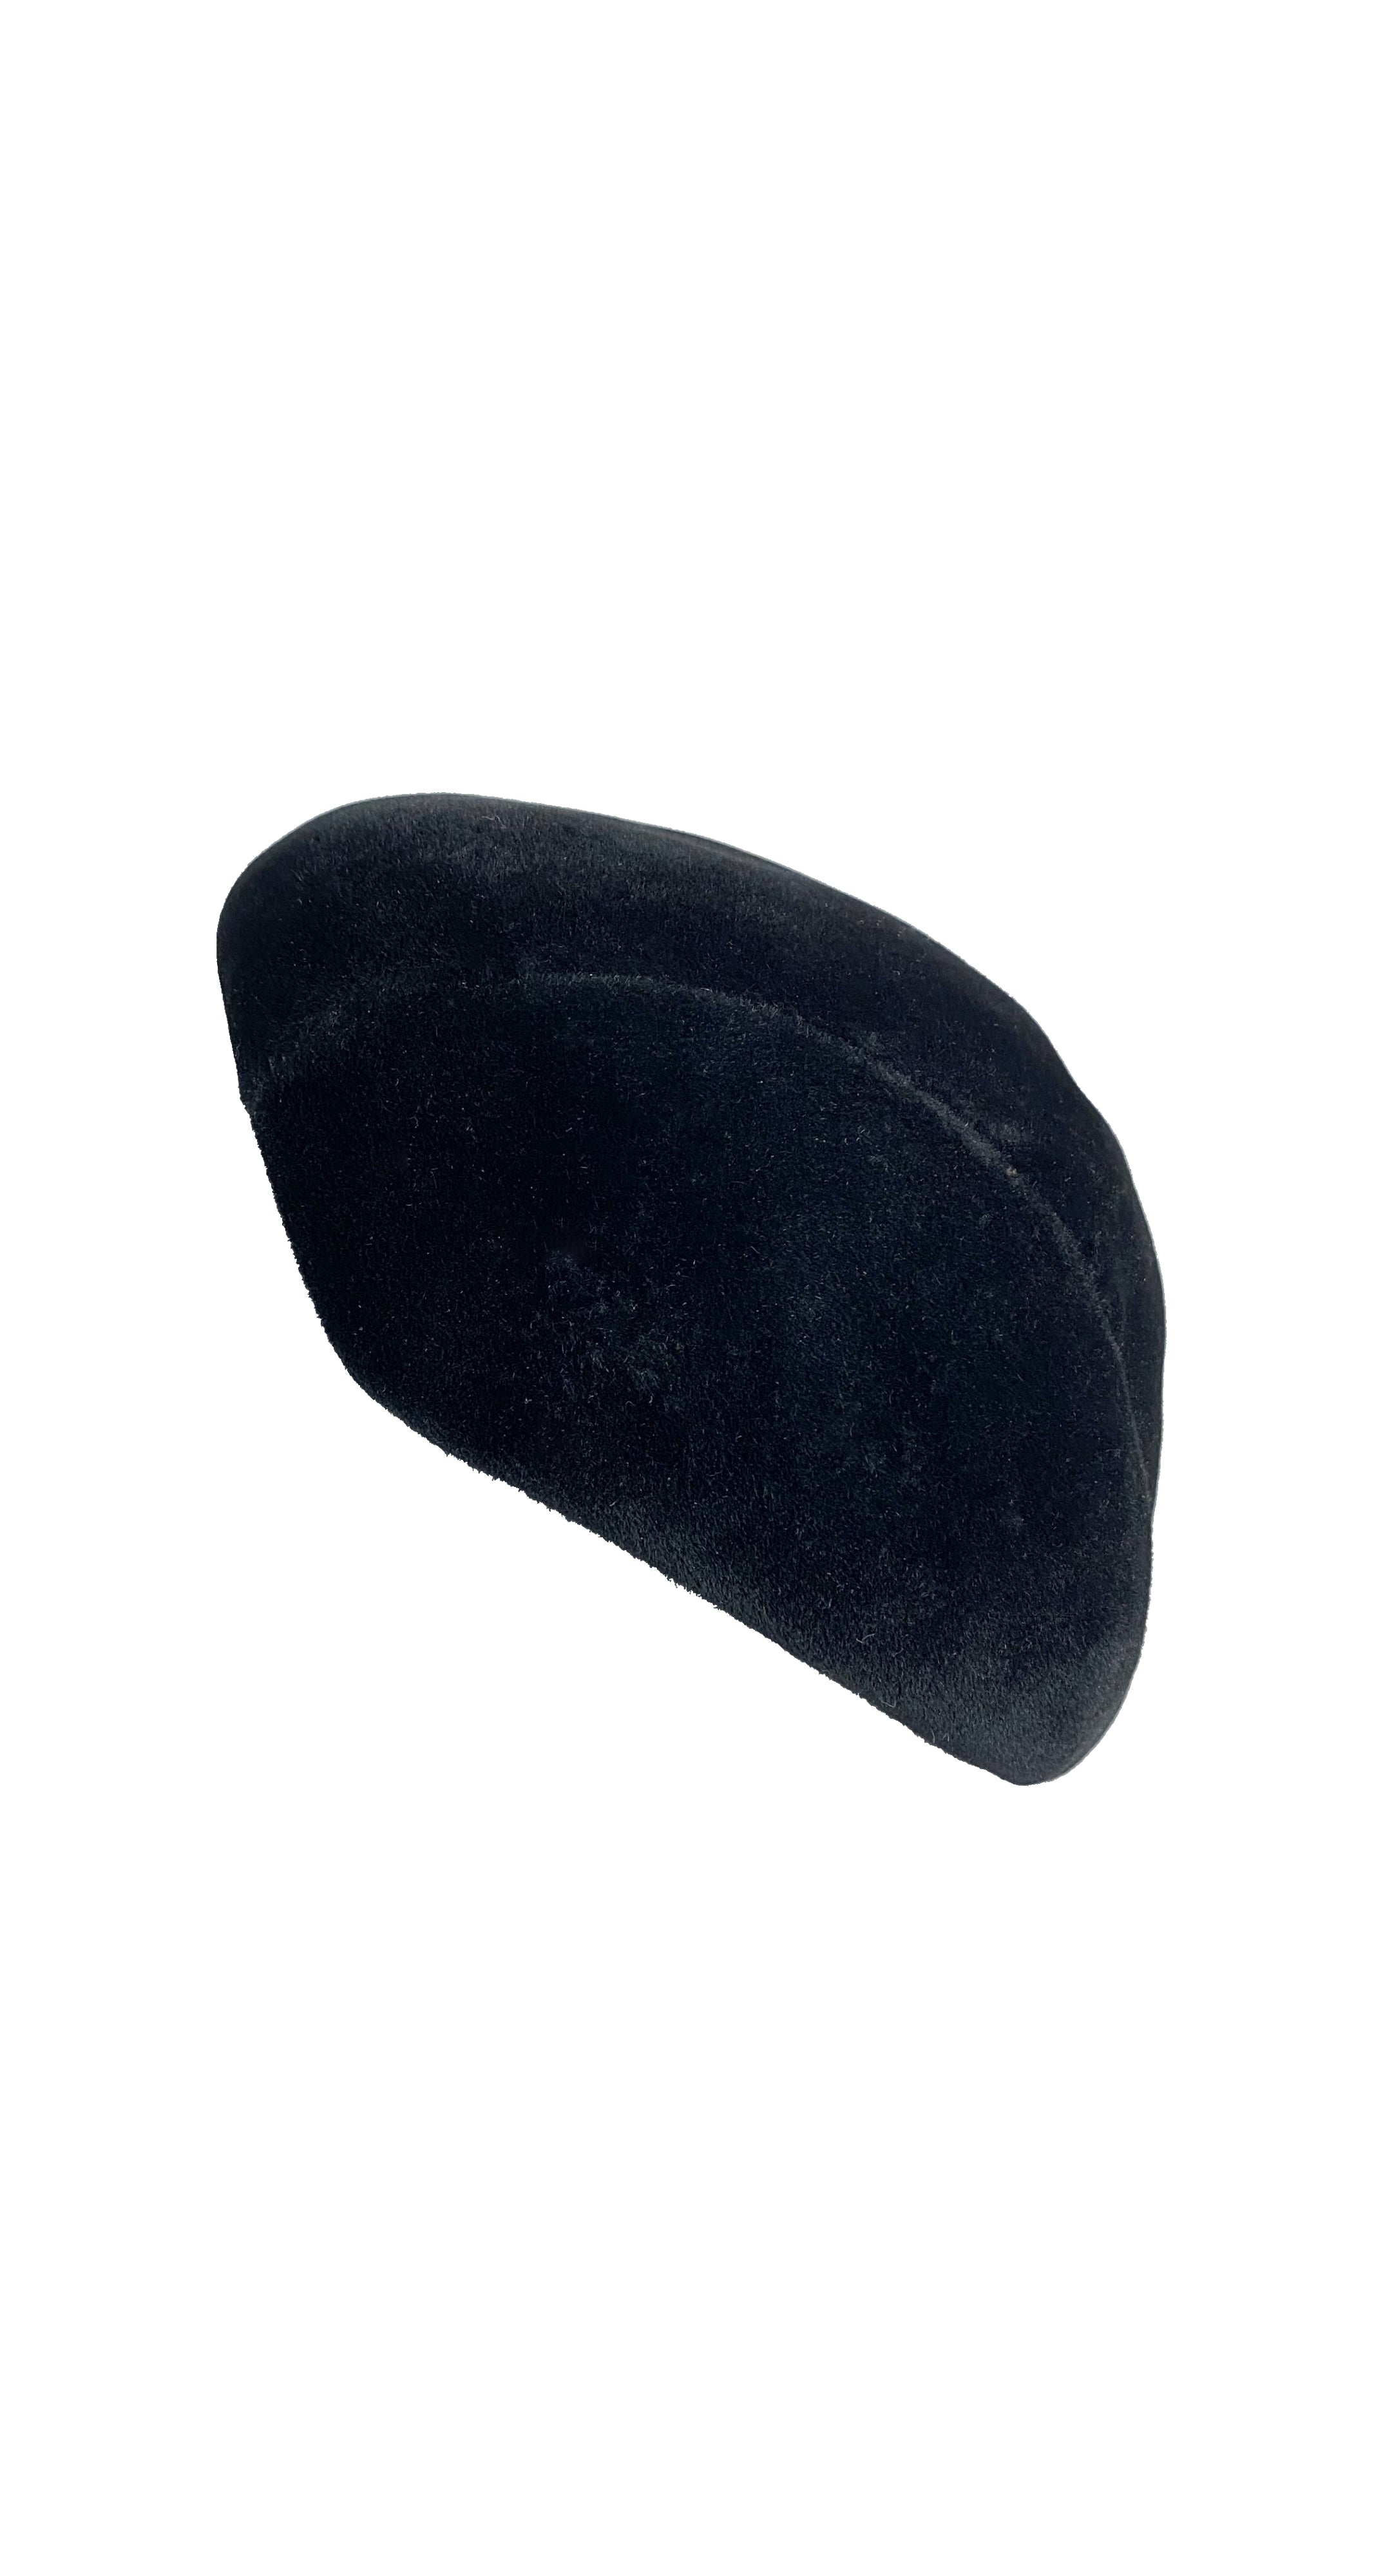 1950s Black Velvet Felt Hat